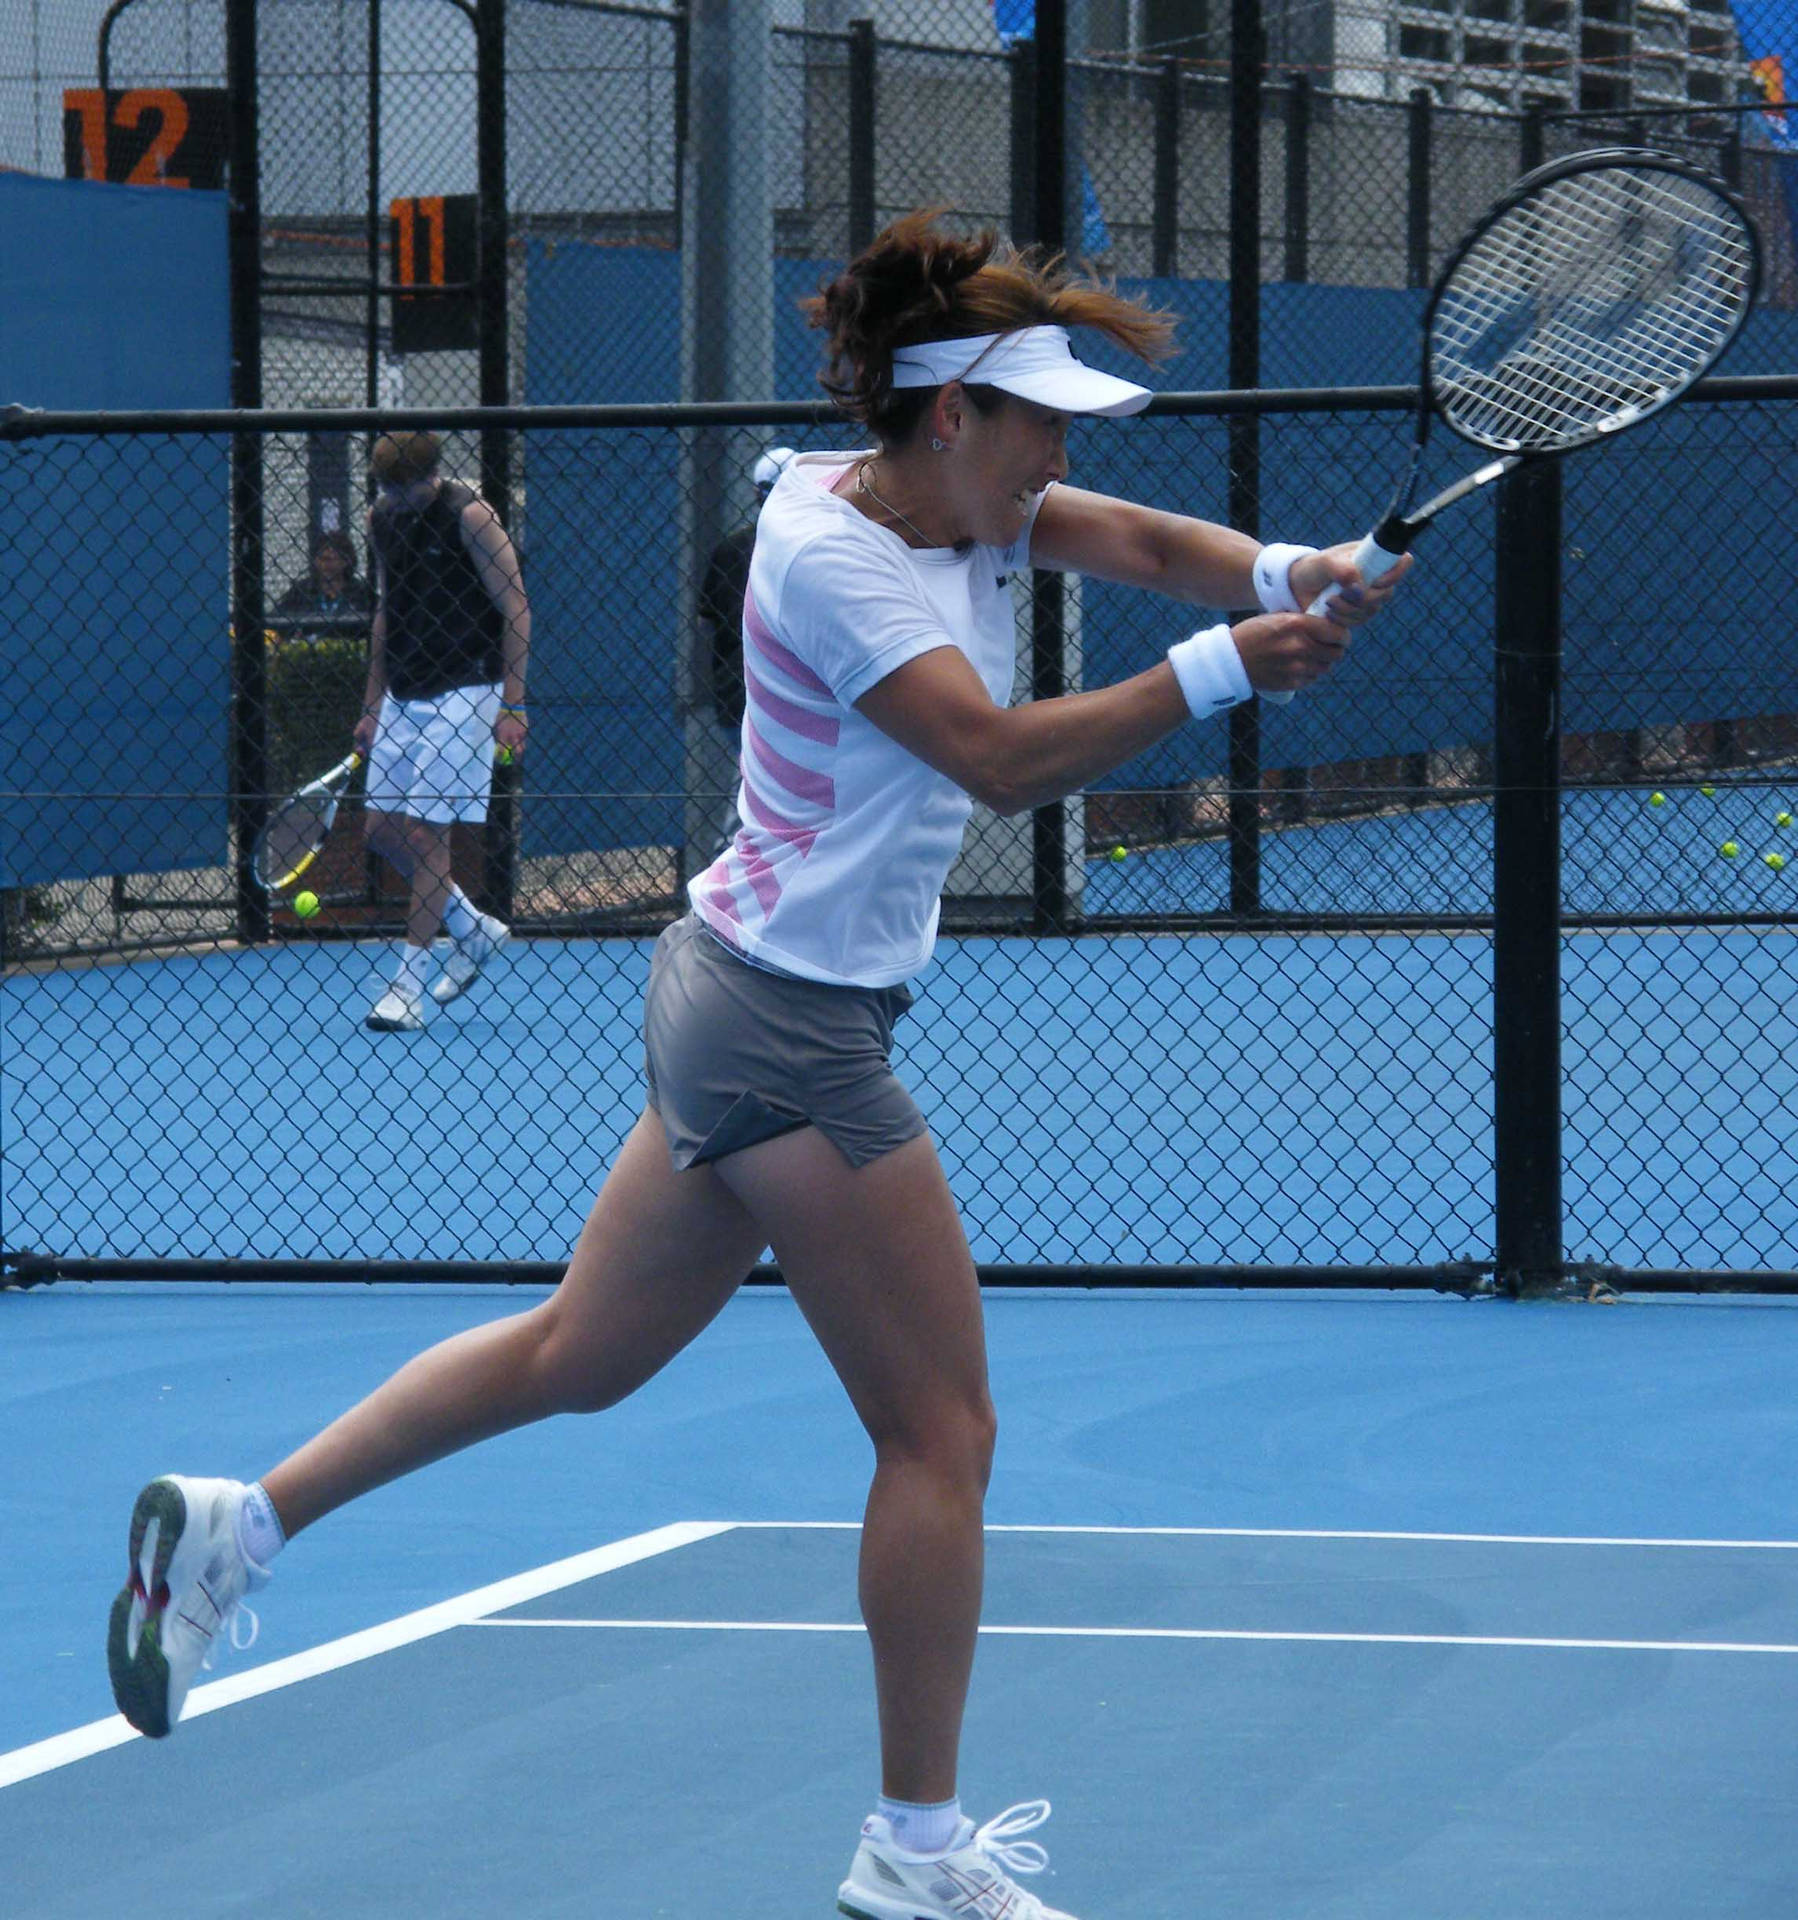 Ai Sugiyama practicing at a tennis training facility. Wallpaper